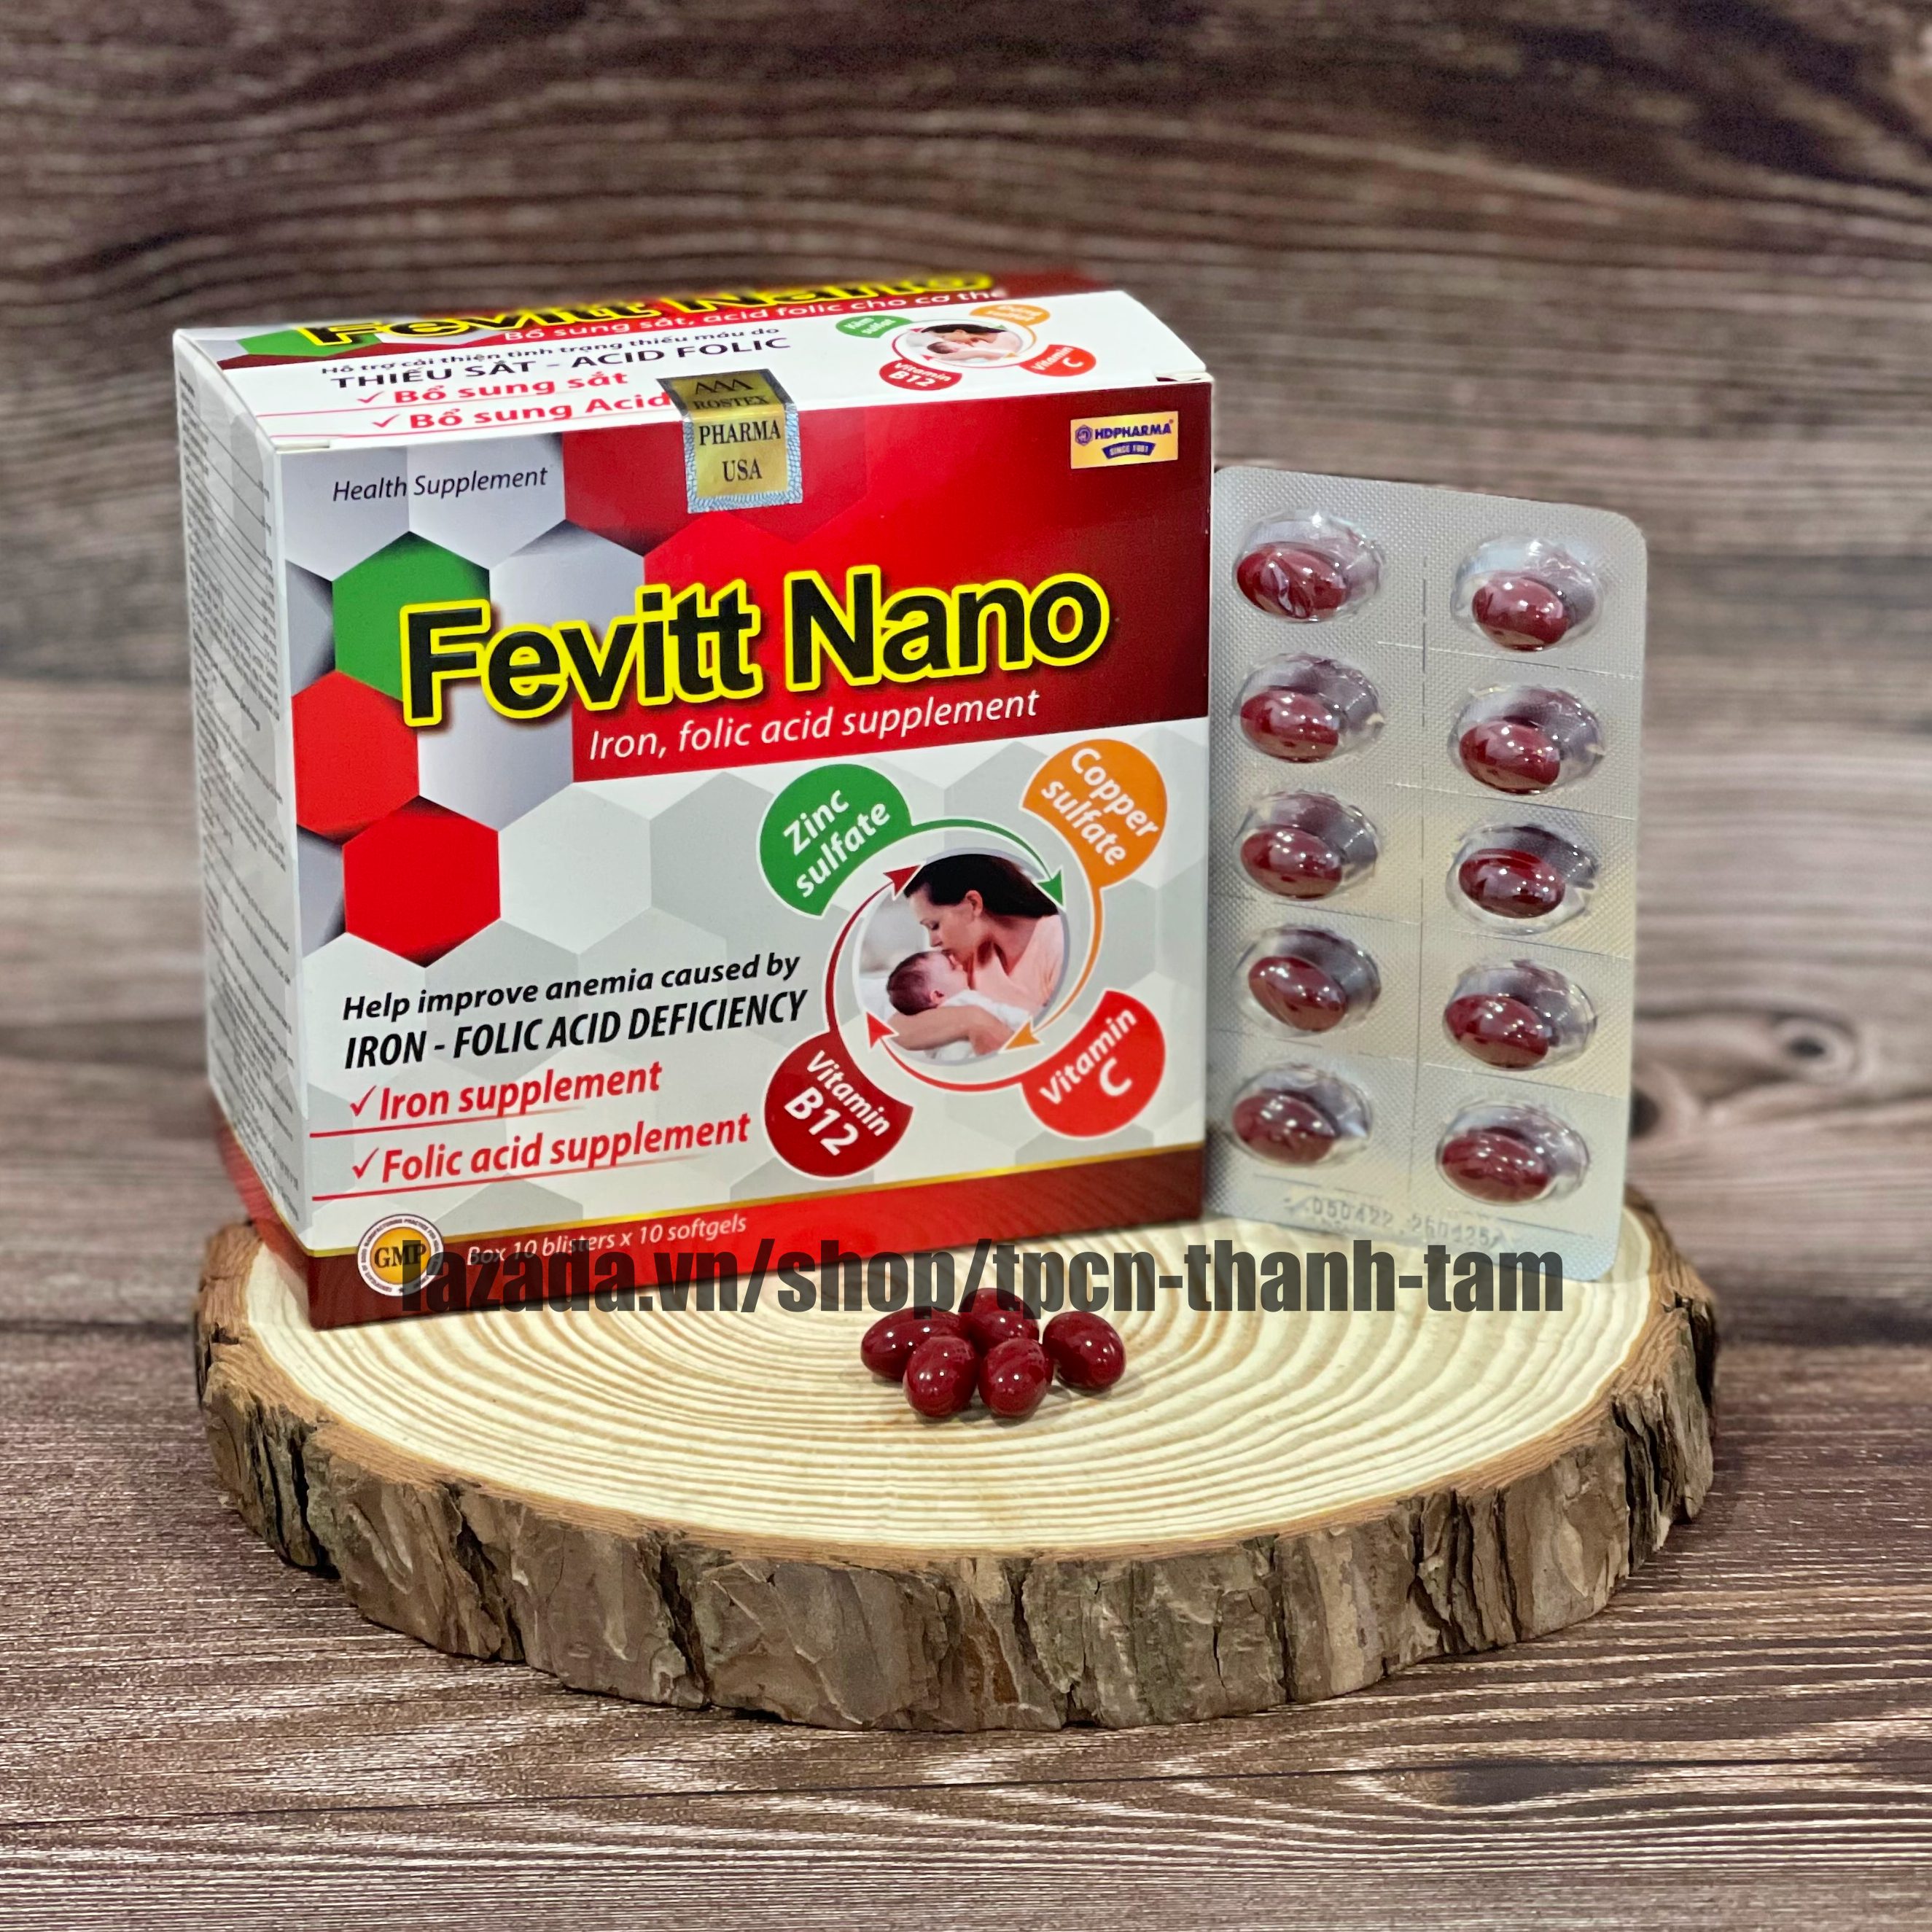 Viên uống bổ sung sắt FEVITT NANO bổ máu, cải thiện tình trạng thiếu máu